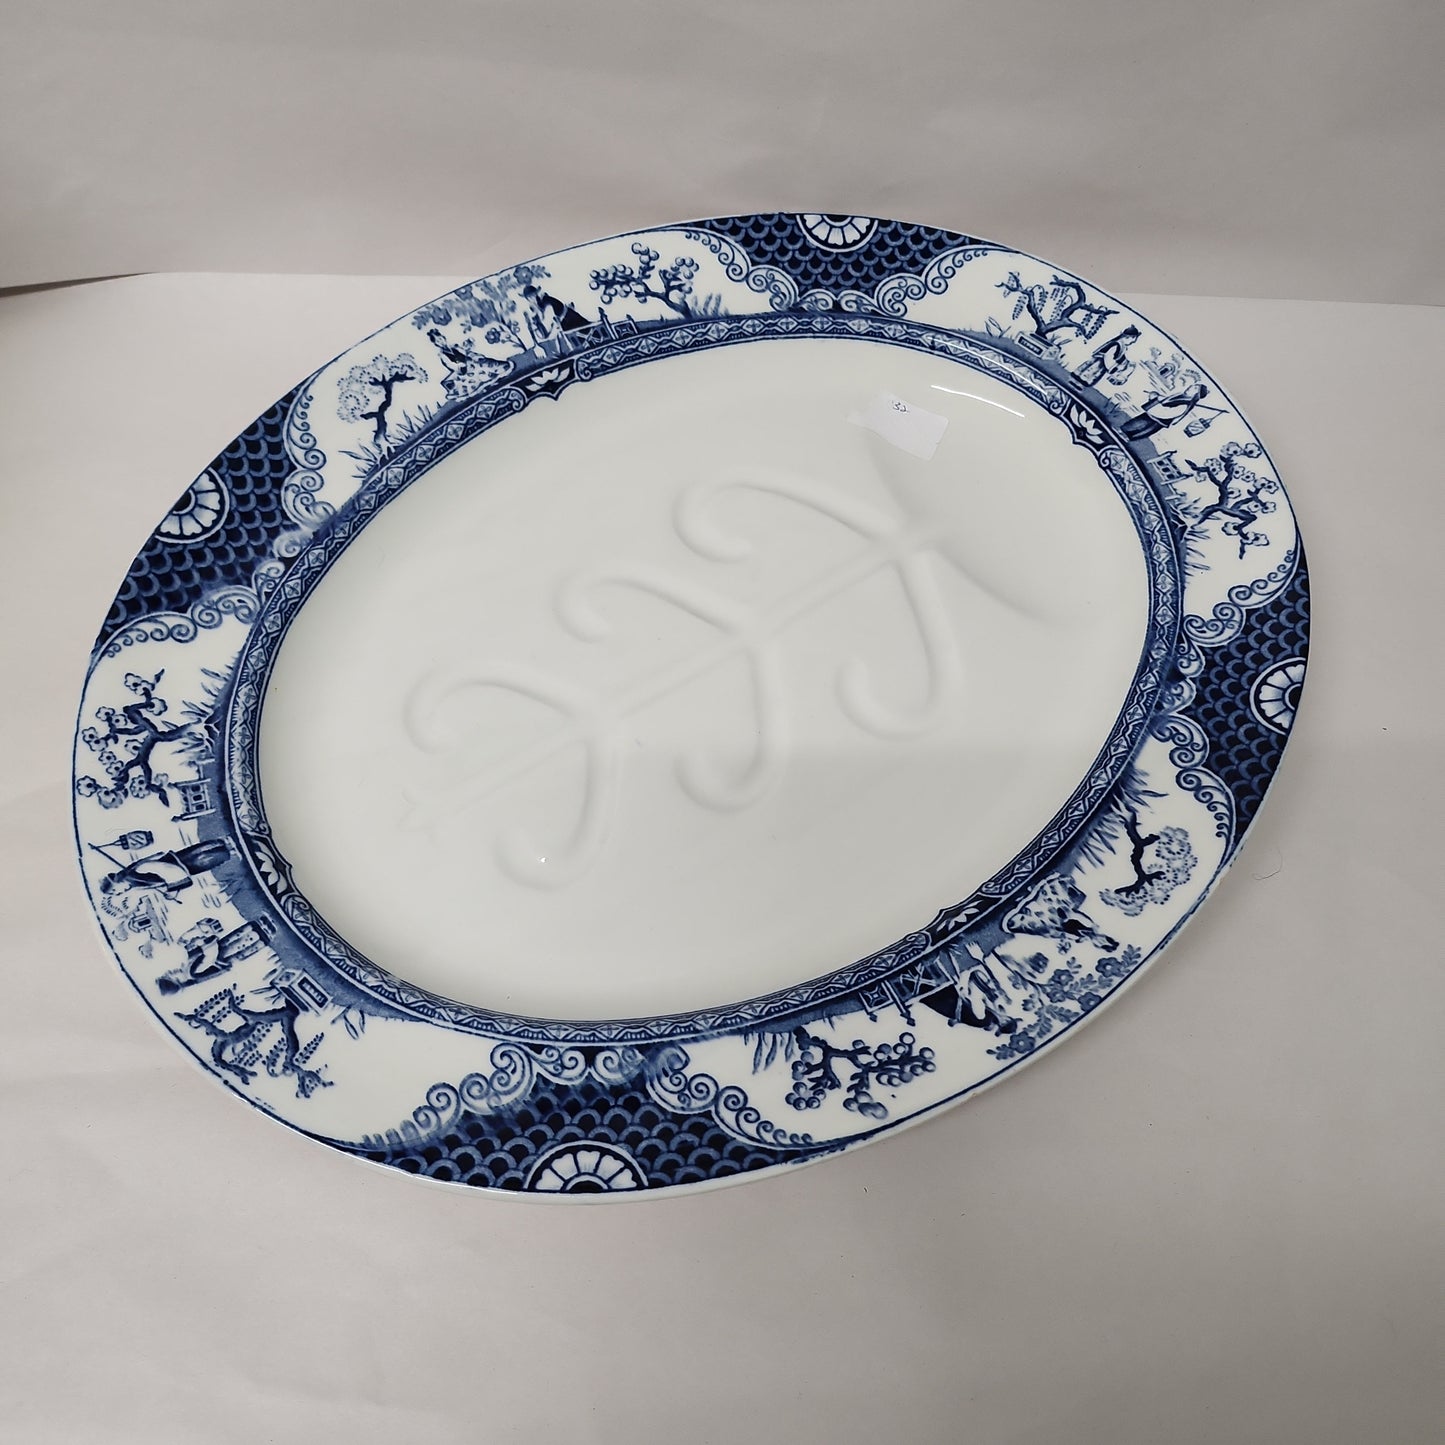 Rare 1891 Adderley blue and white platter 40 x 32cm